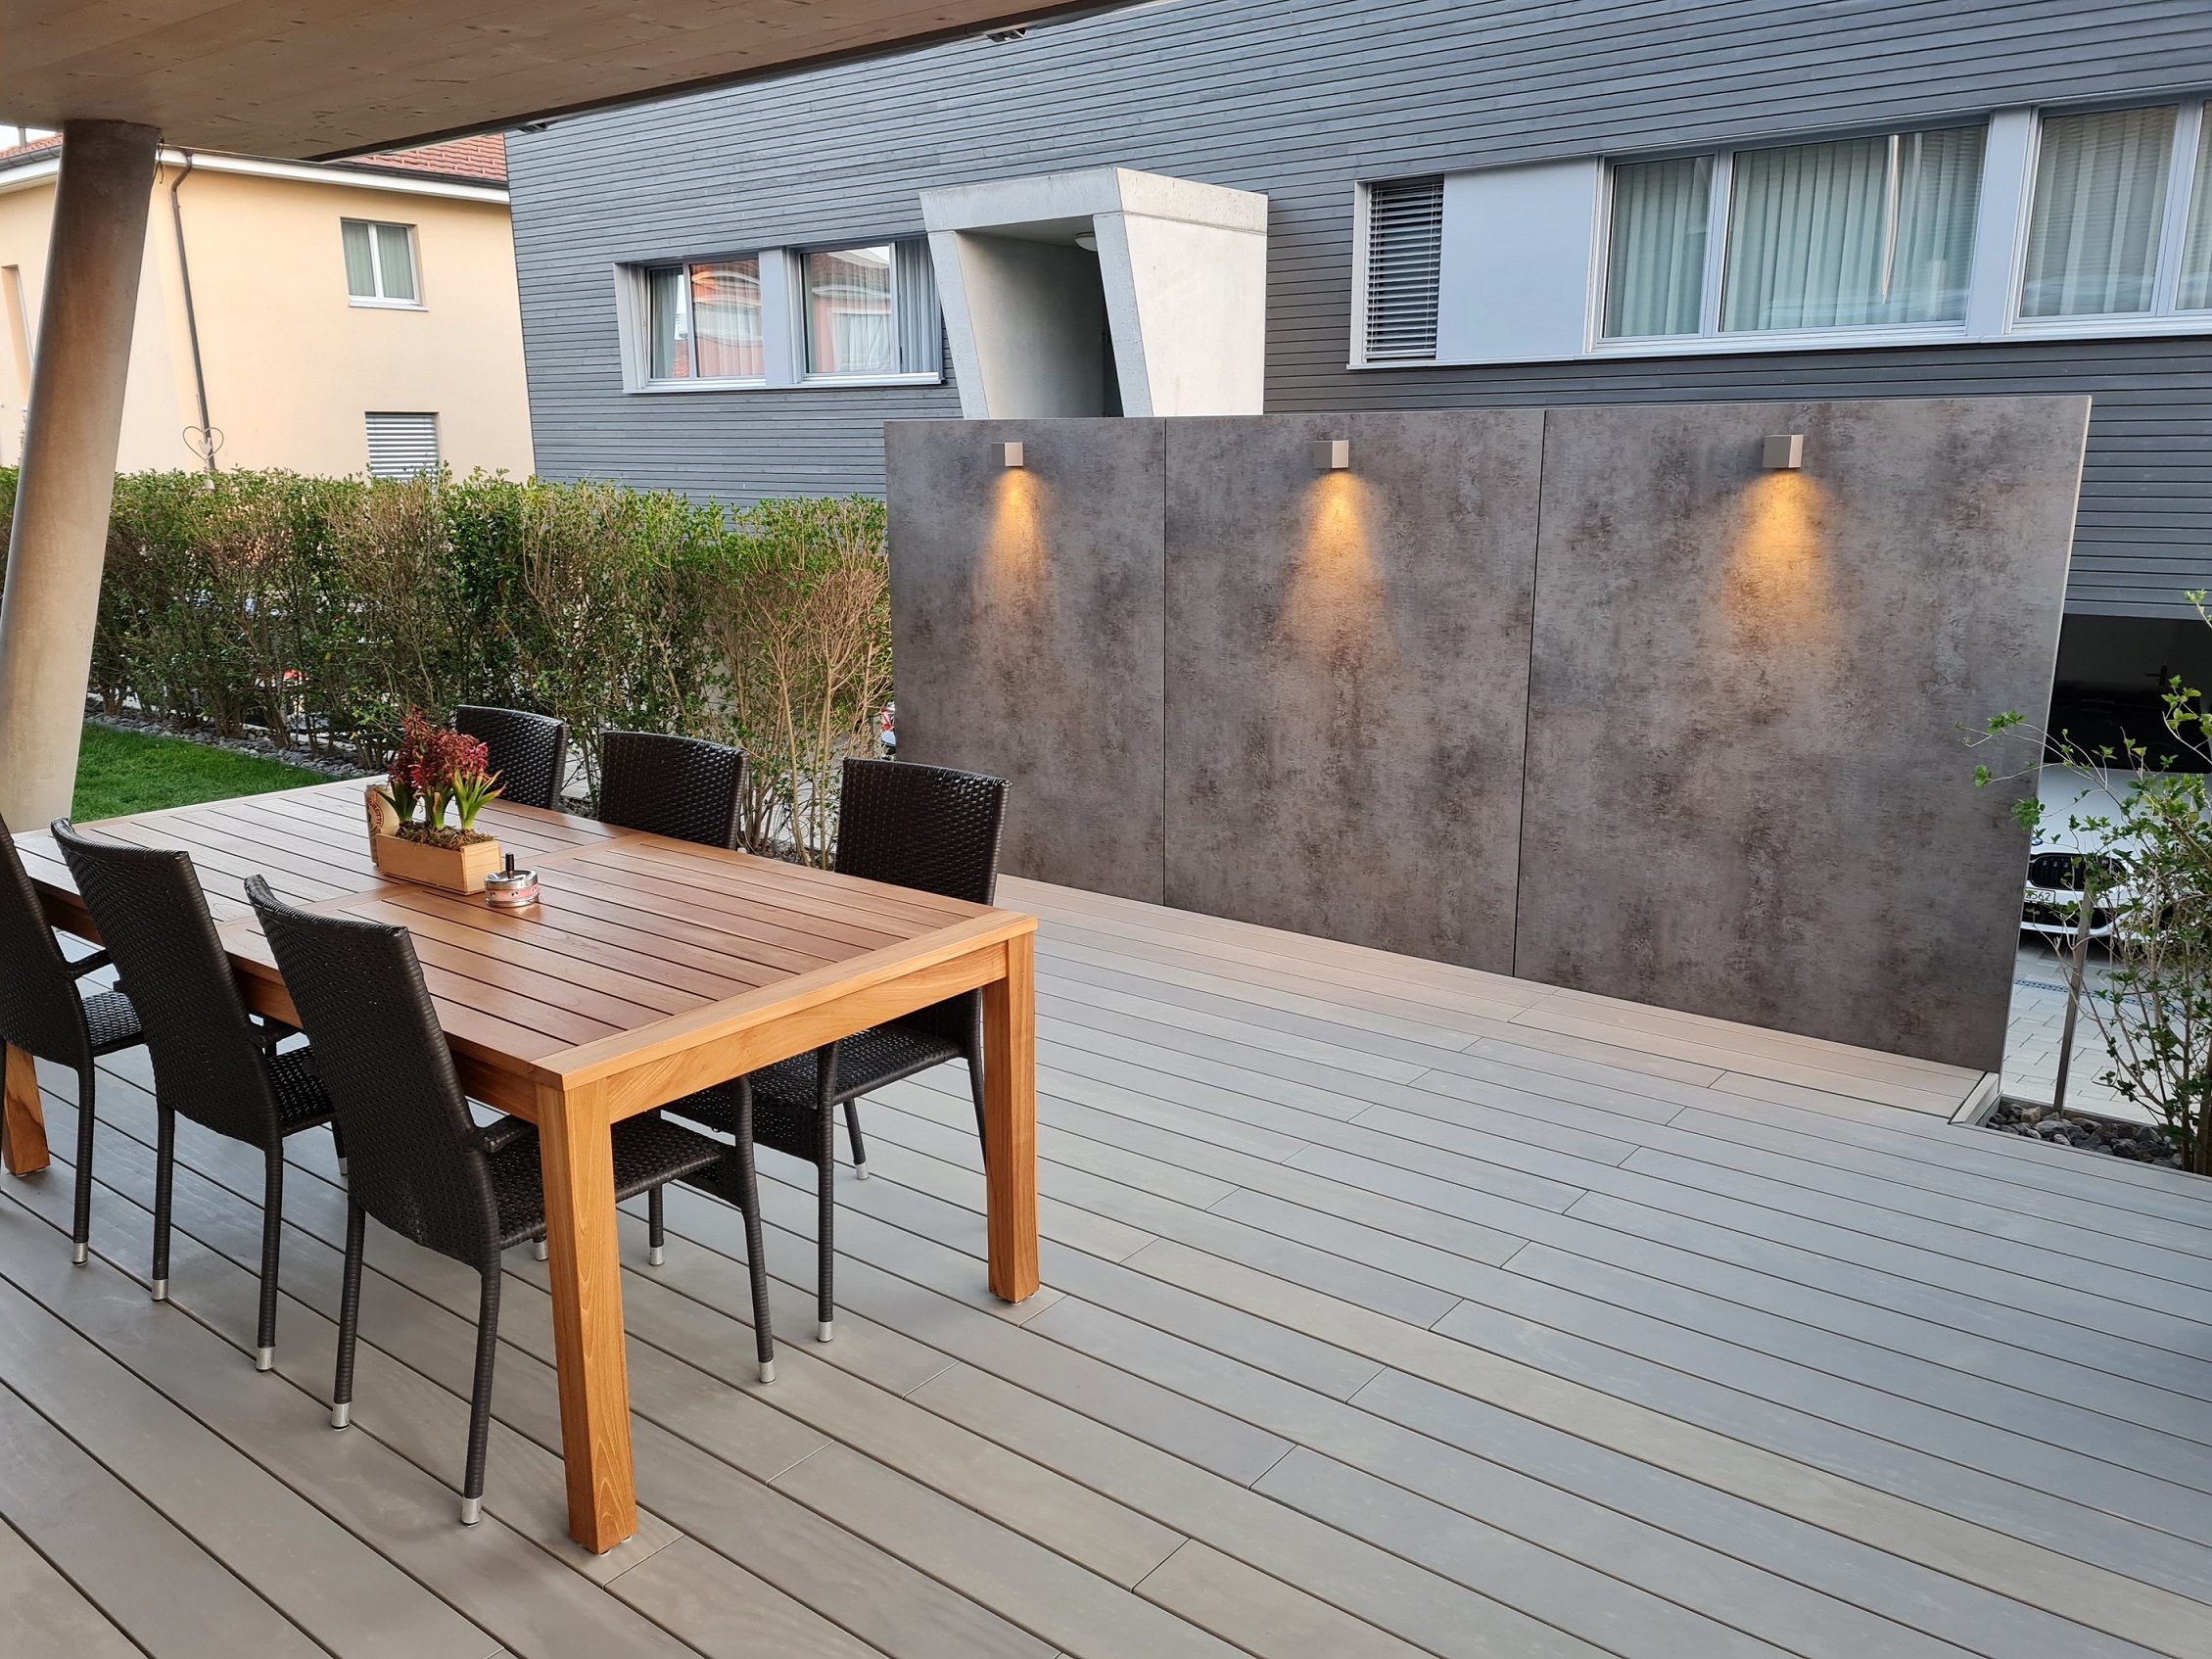 Terrasse mit Holzrost und Tisch